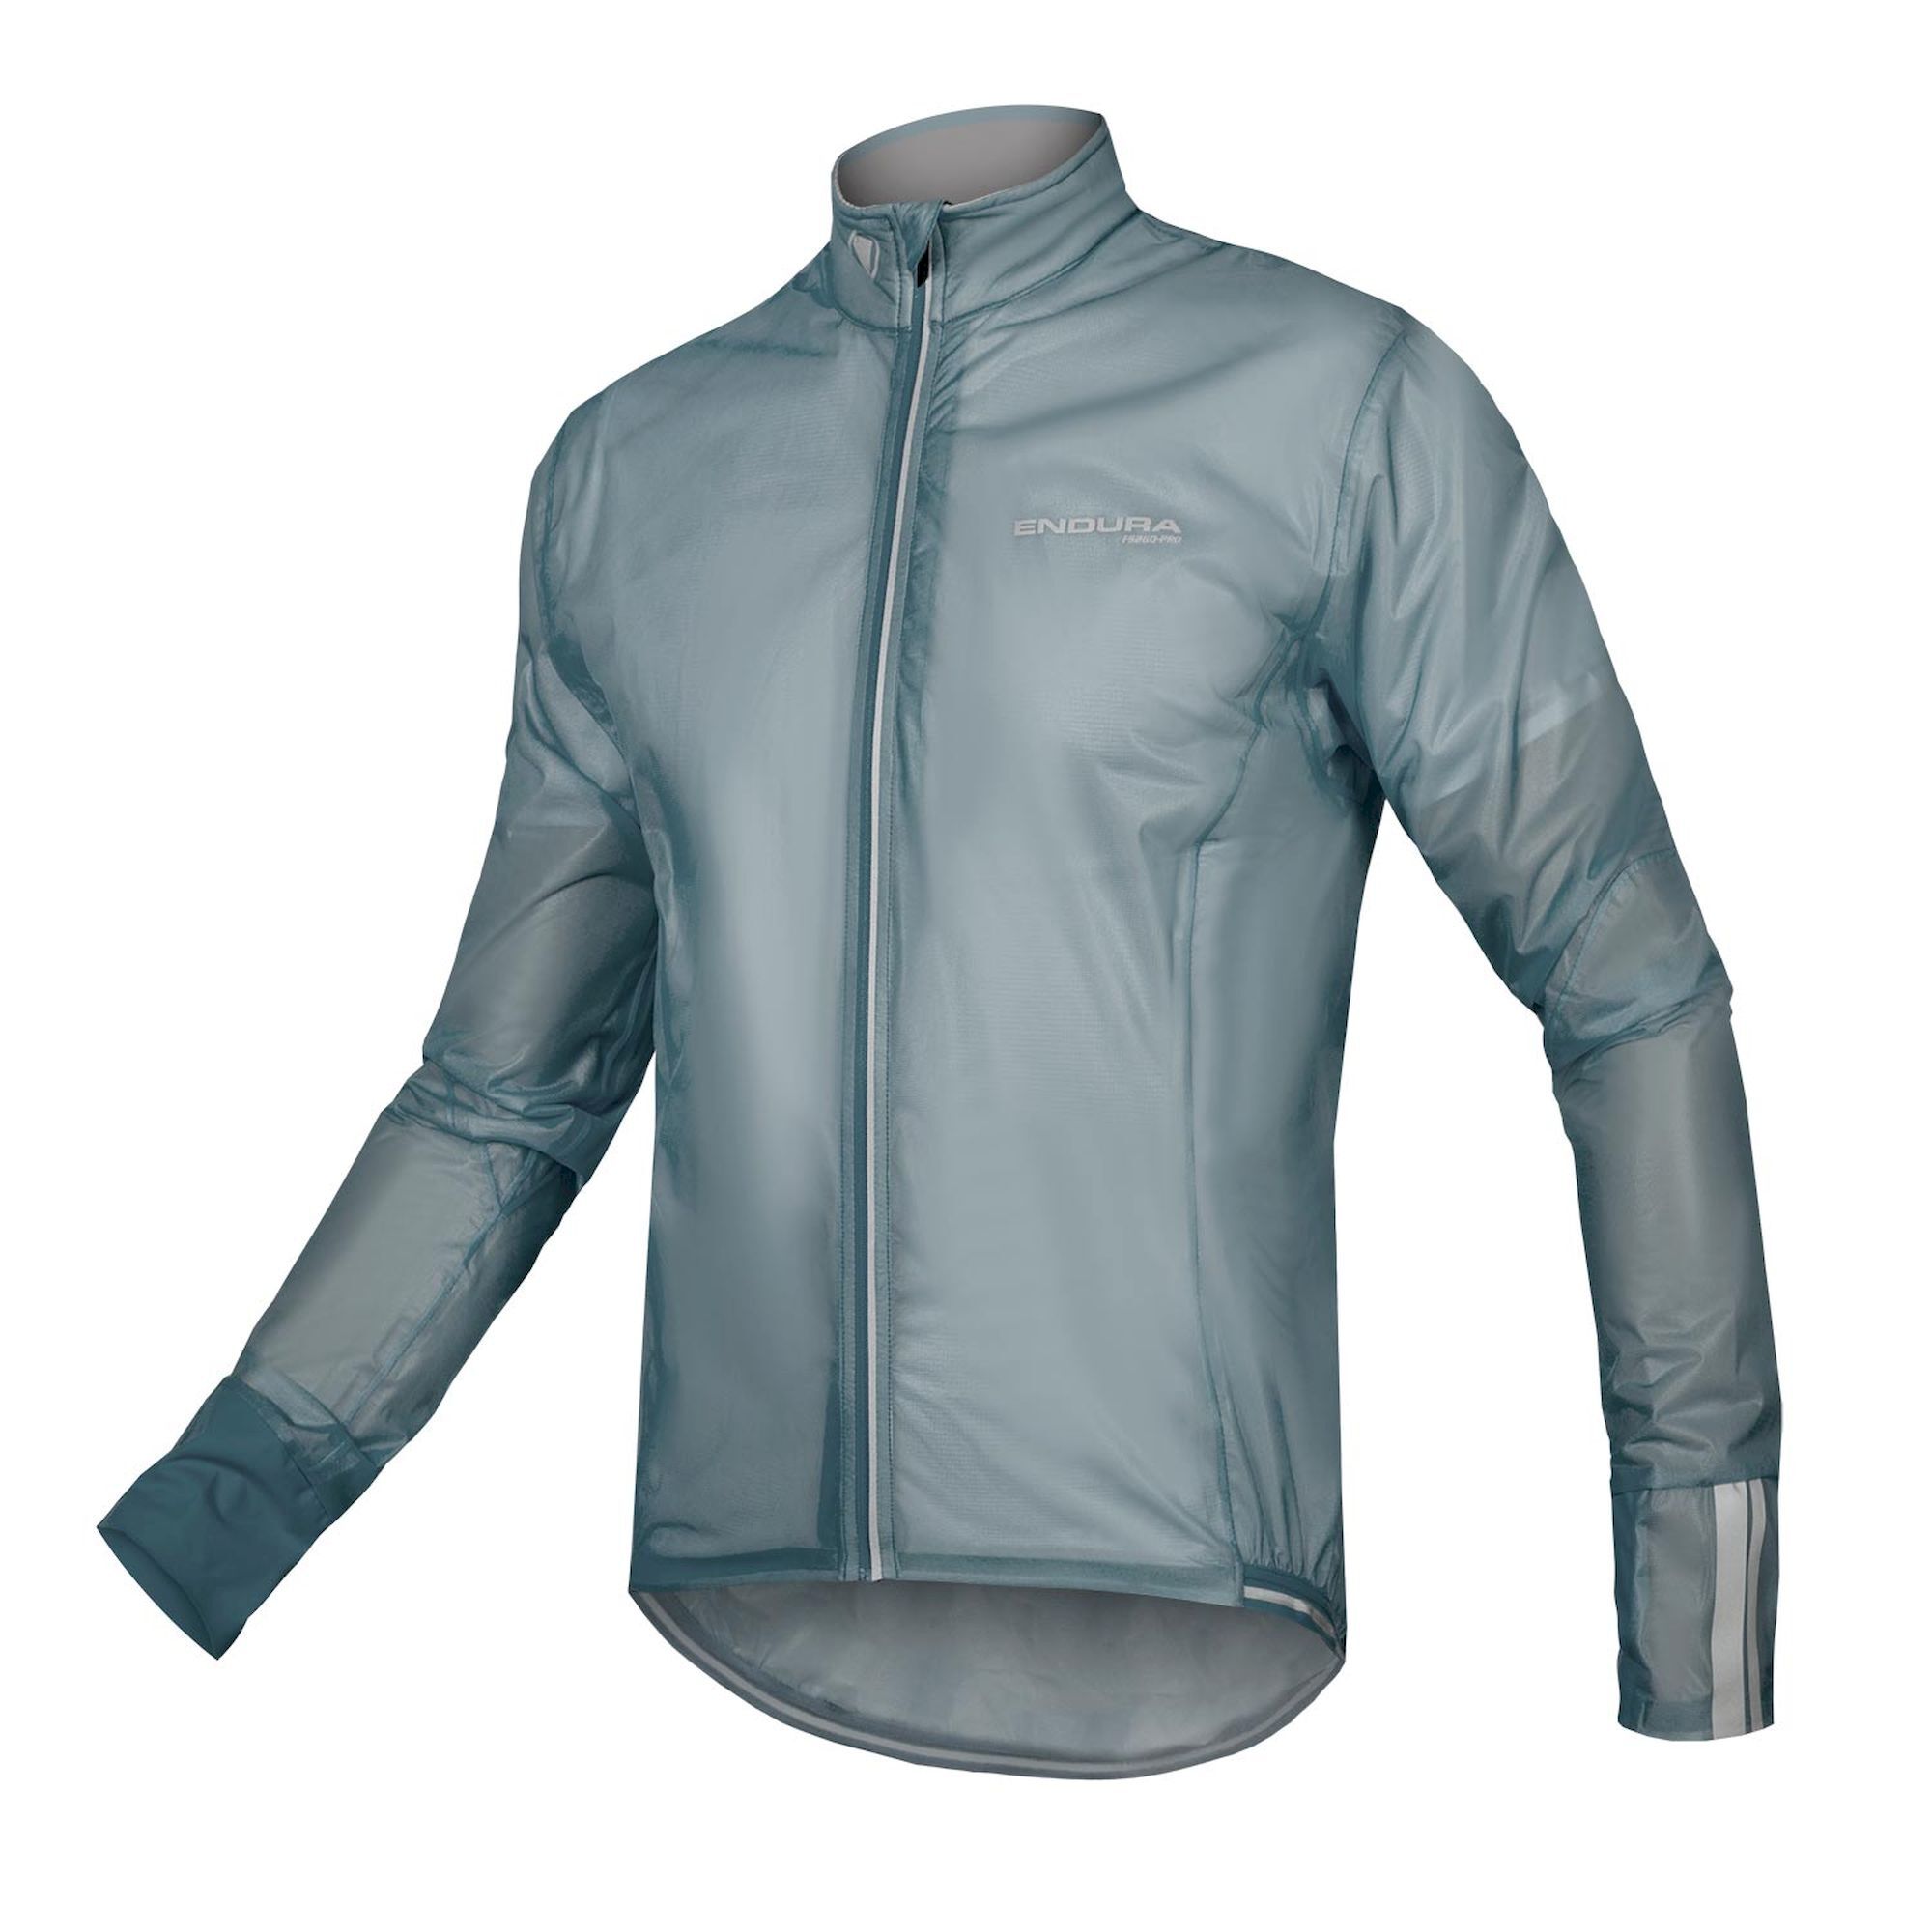 ENDURA FS260 Pro Adrenaline Race Cape II - Cycling jacket - Men's